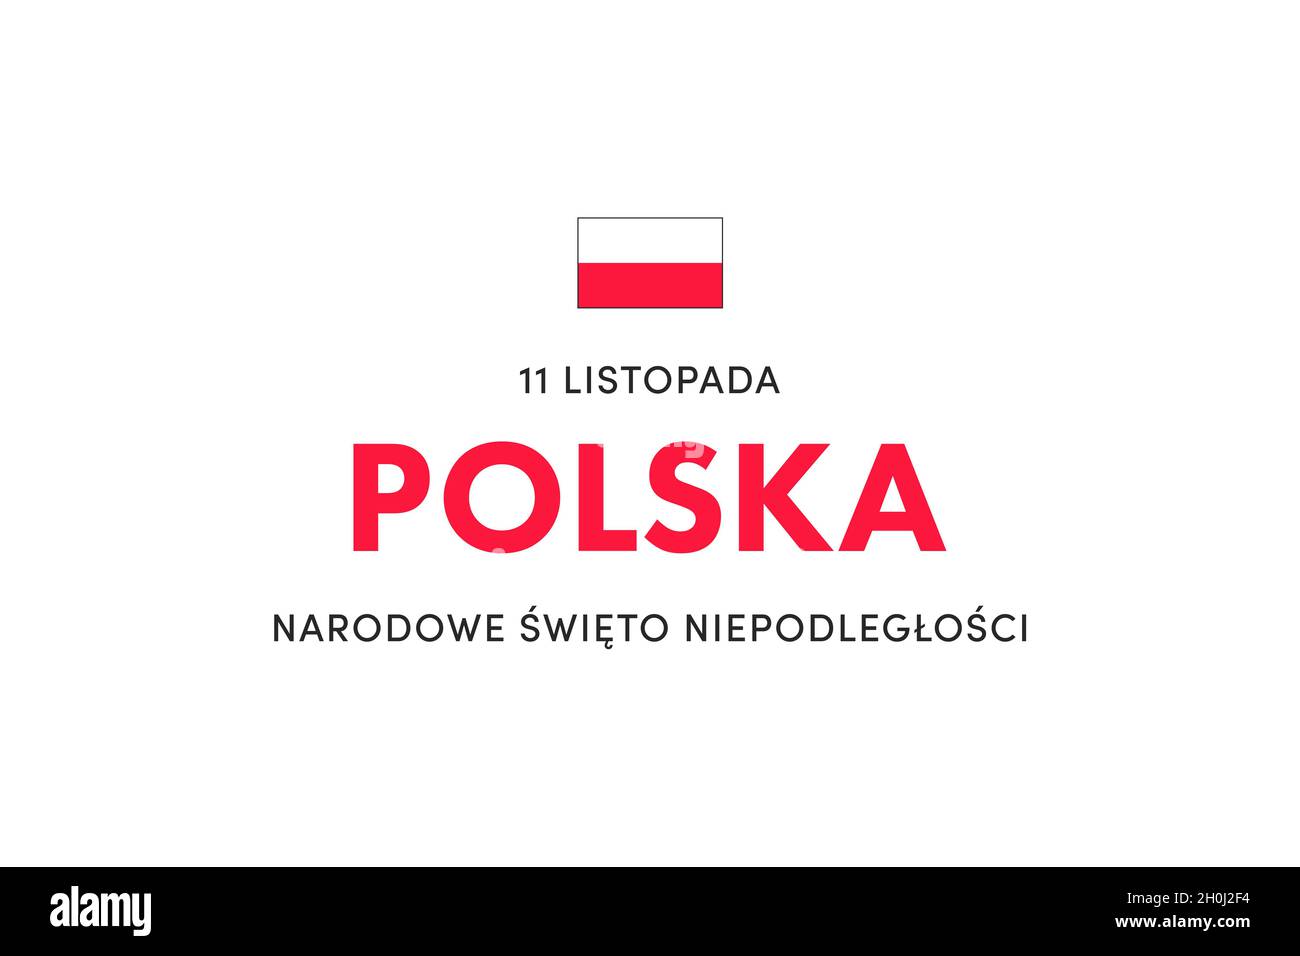 Unabhängigkeitstag Polens. (Polnisch: Narodowe Święto Niepodległości, Polska,11 listopada. Übersetzung: Nationaler Unabhängigkeitstag, Polen, November 11) Stockfoto